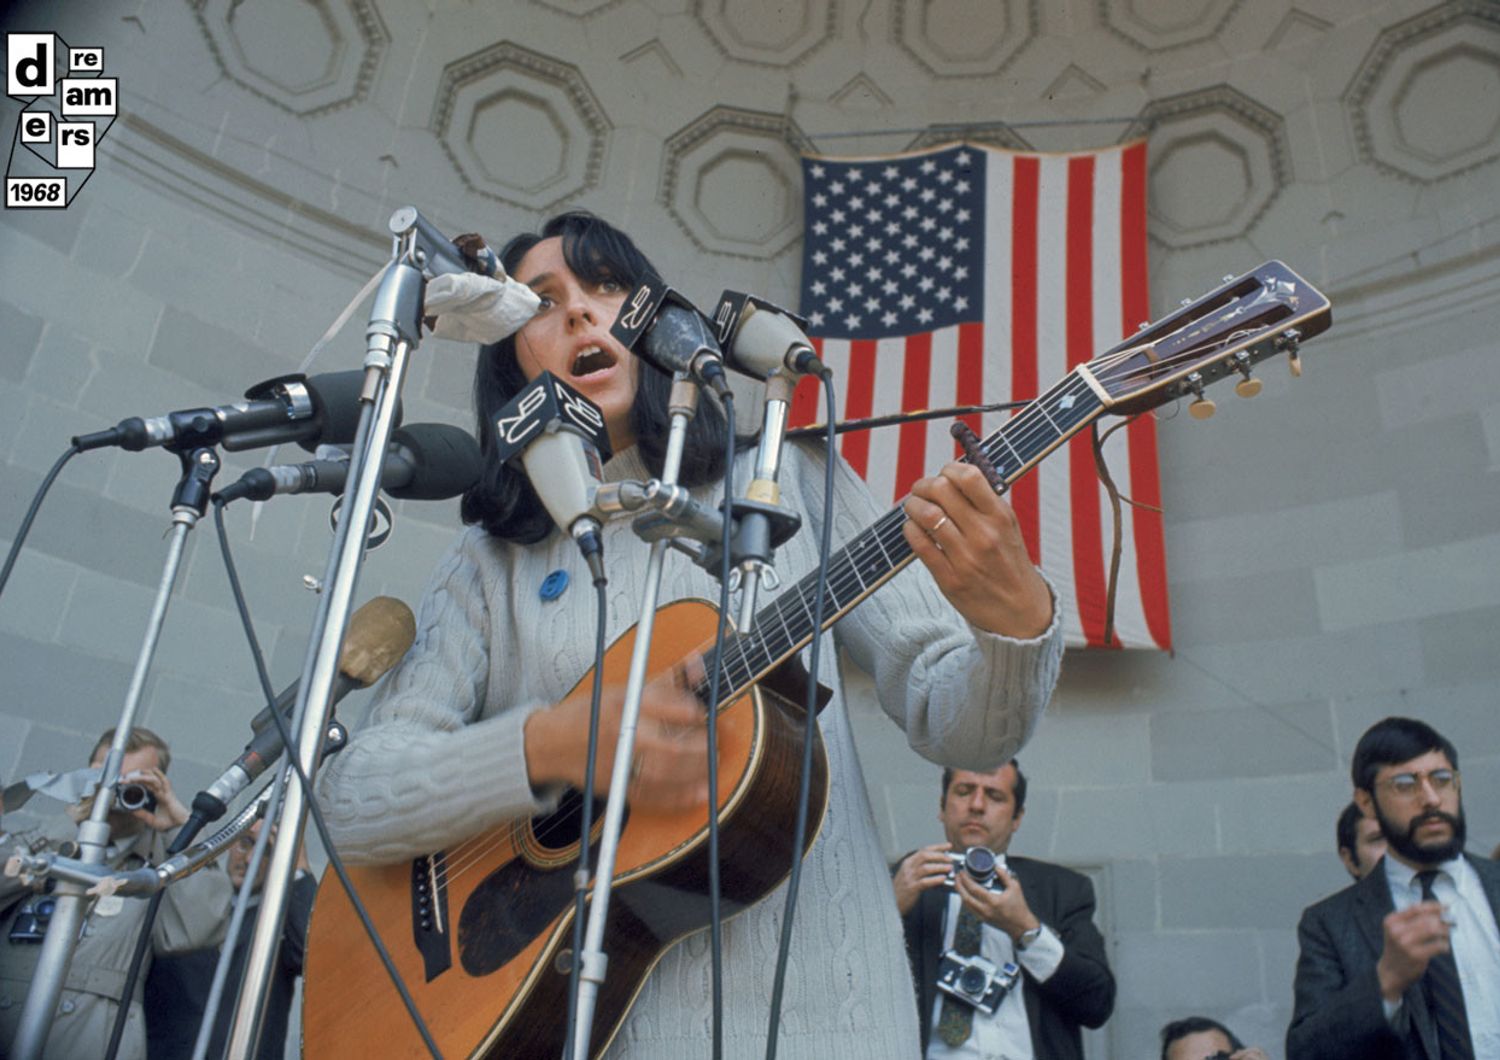 New York, Joan Baez, cantante e attivista sociale americana, canta ad una manifestazione contro la guerra a Central Park, 3 aprile.&nbsp;